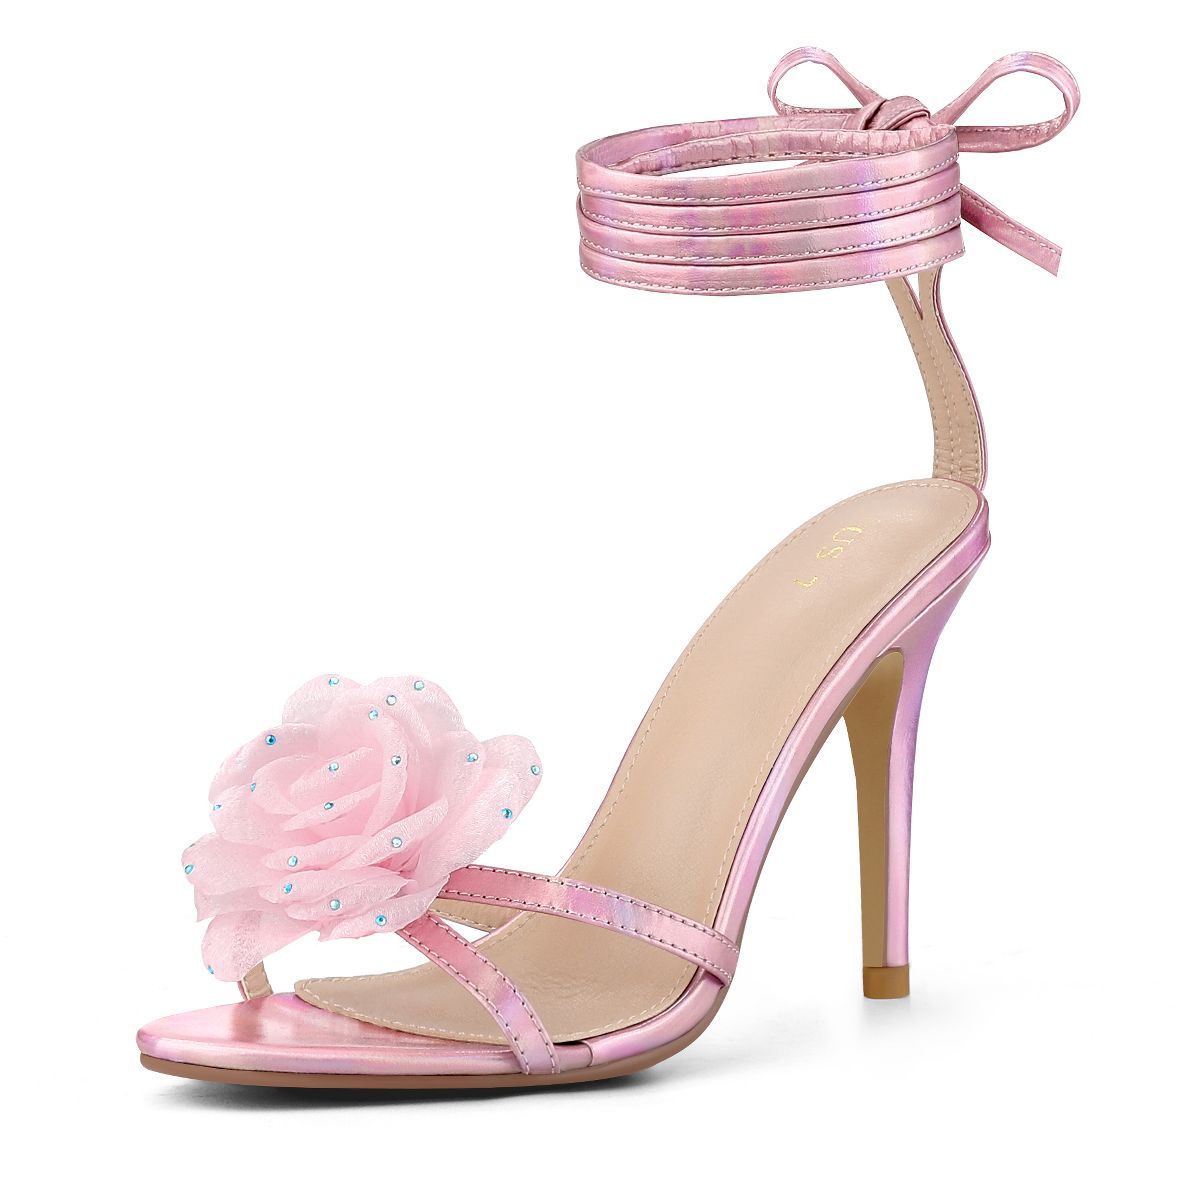 Allegra K Women's Flower Rhinestone Open Toe Lace Up Stiletto Heels Sandals | Target